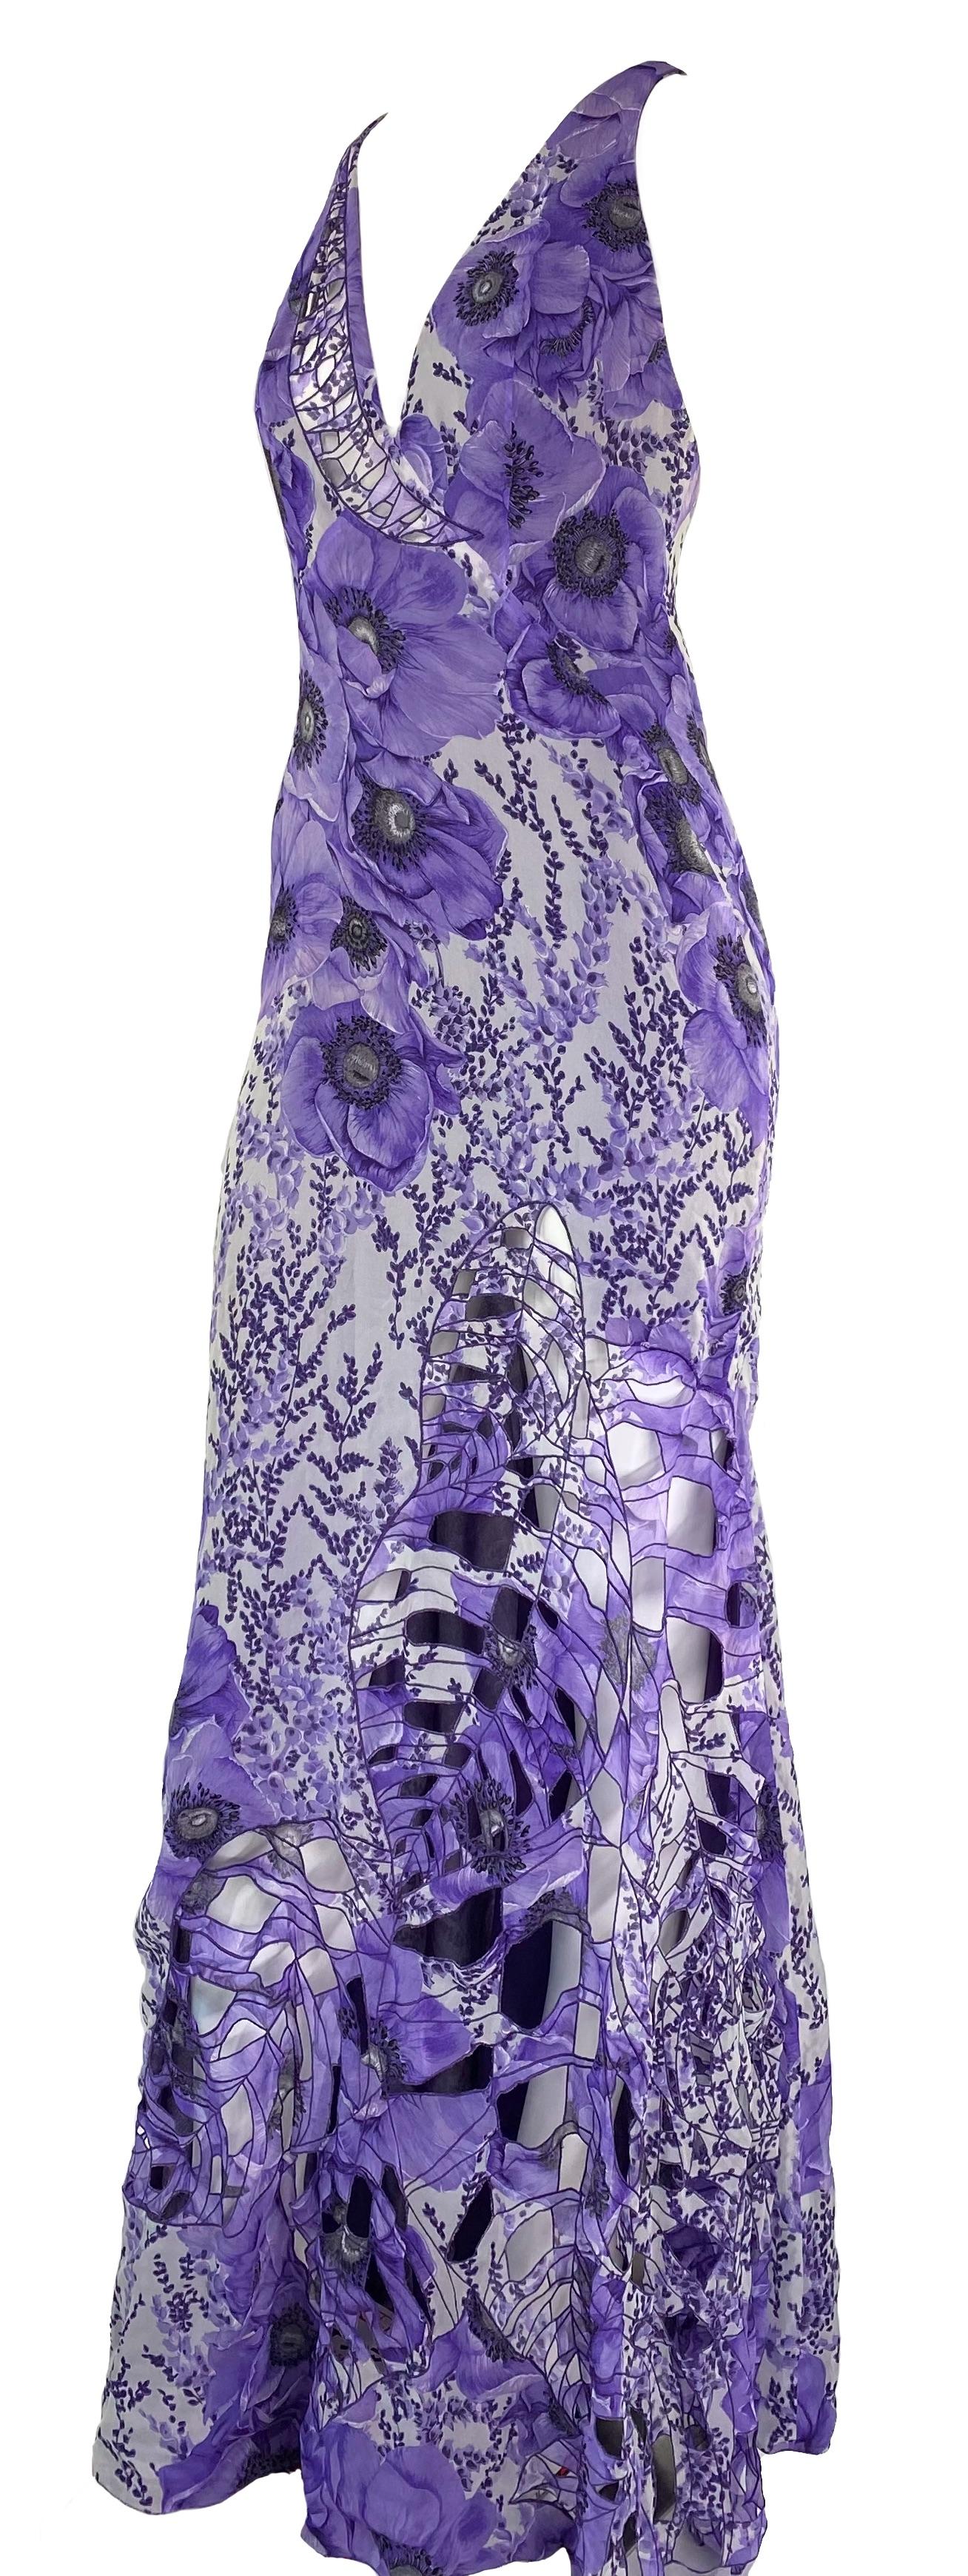 Présentation d'une magnifique robe longue à découpes imprimée coquelicot violet, créée par Donatella Versace. Cette pièce rare est dotée d'un corset intérieur zippé et de l'imprimé coquelicot qui a fait ses débuts sur le défilé haute couture